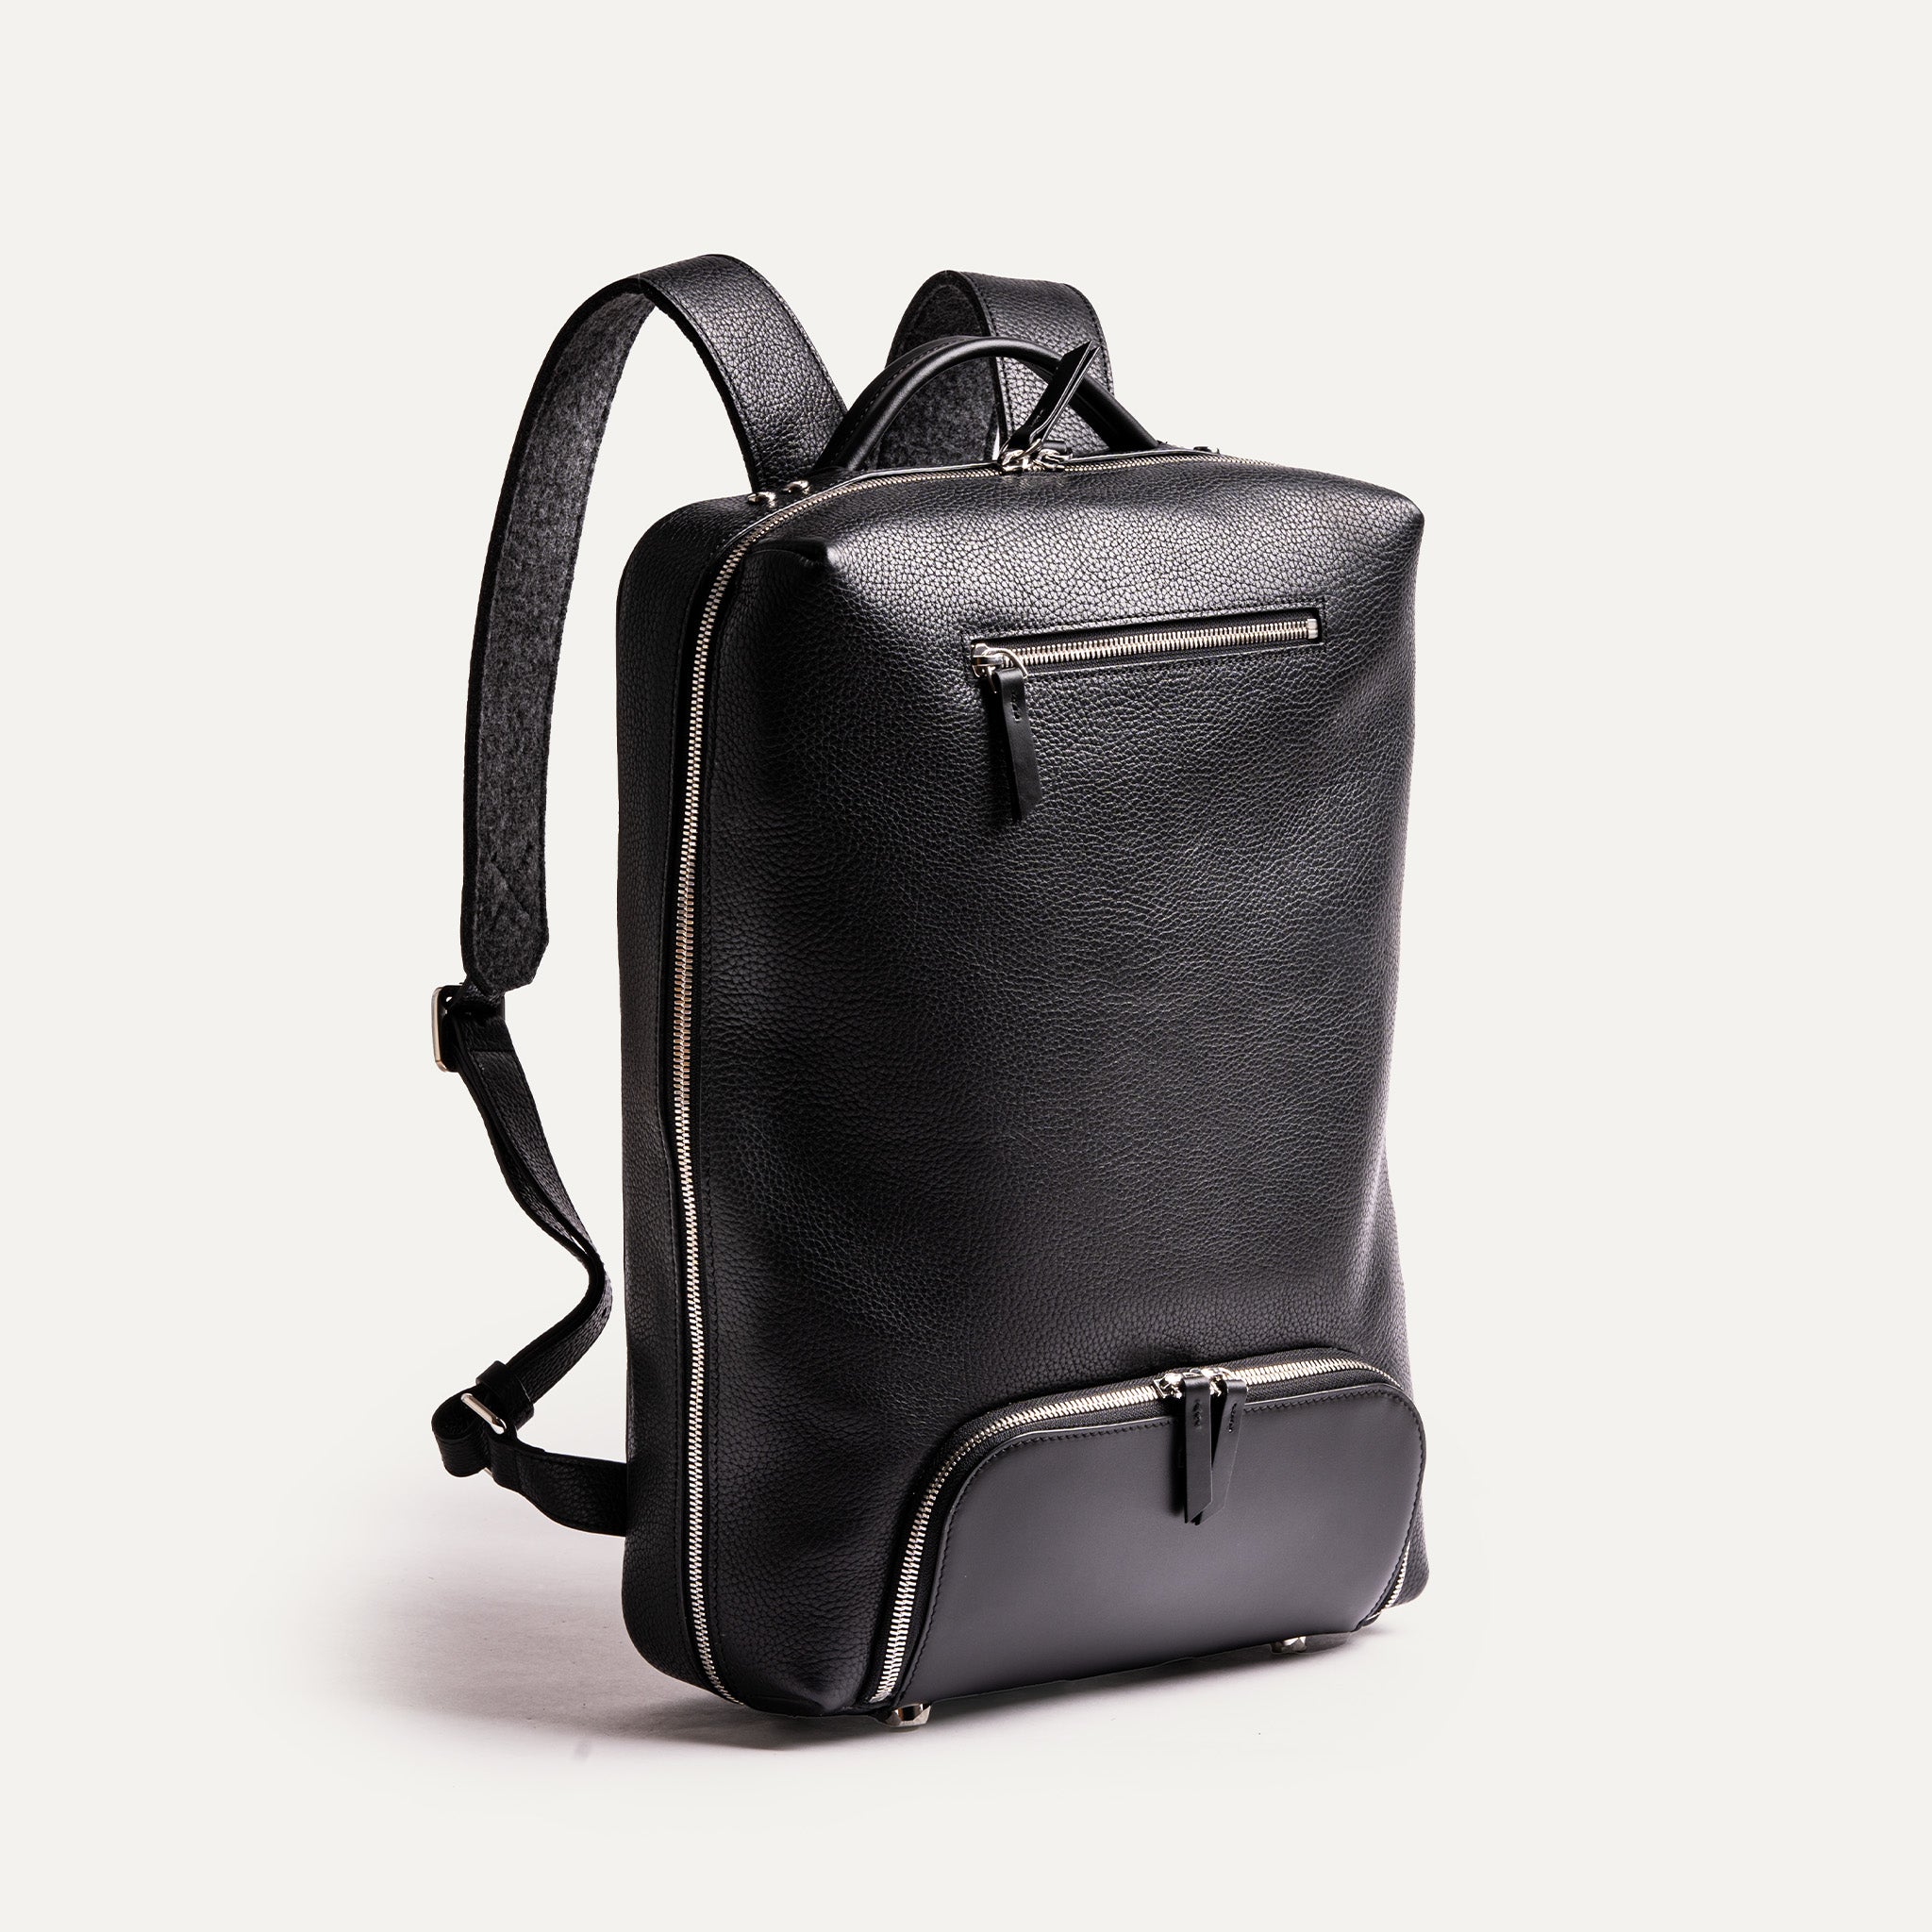 sac à dos en cuir noir avec une texture de grainée, offrant un compartiment principal et une poche frontale plus petite, tous deux avec des fermetures éclair.